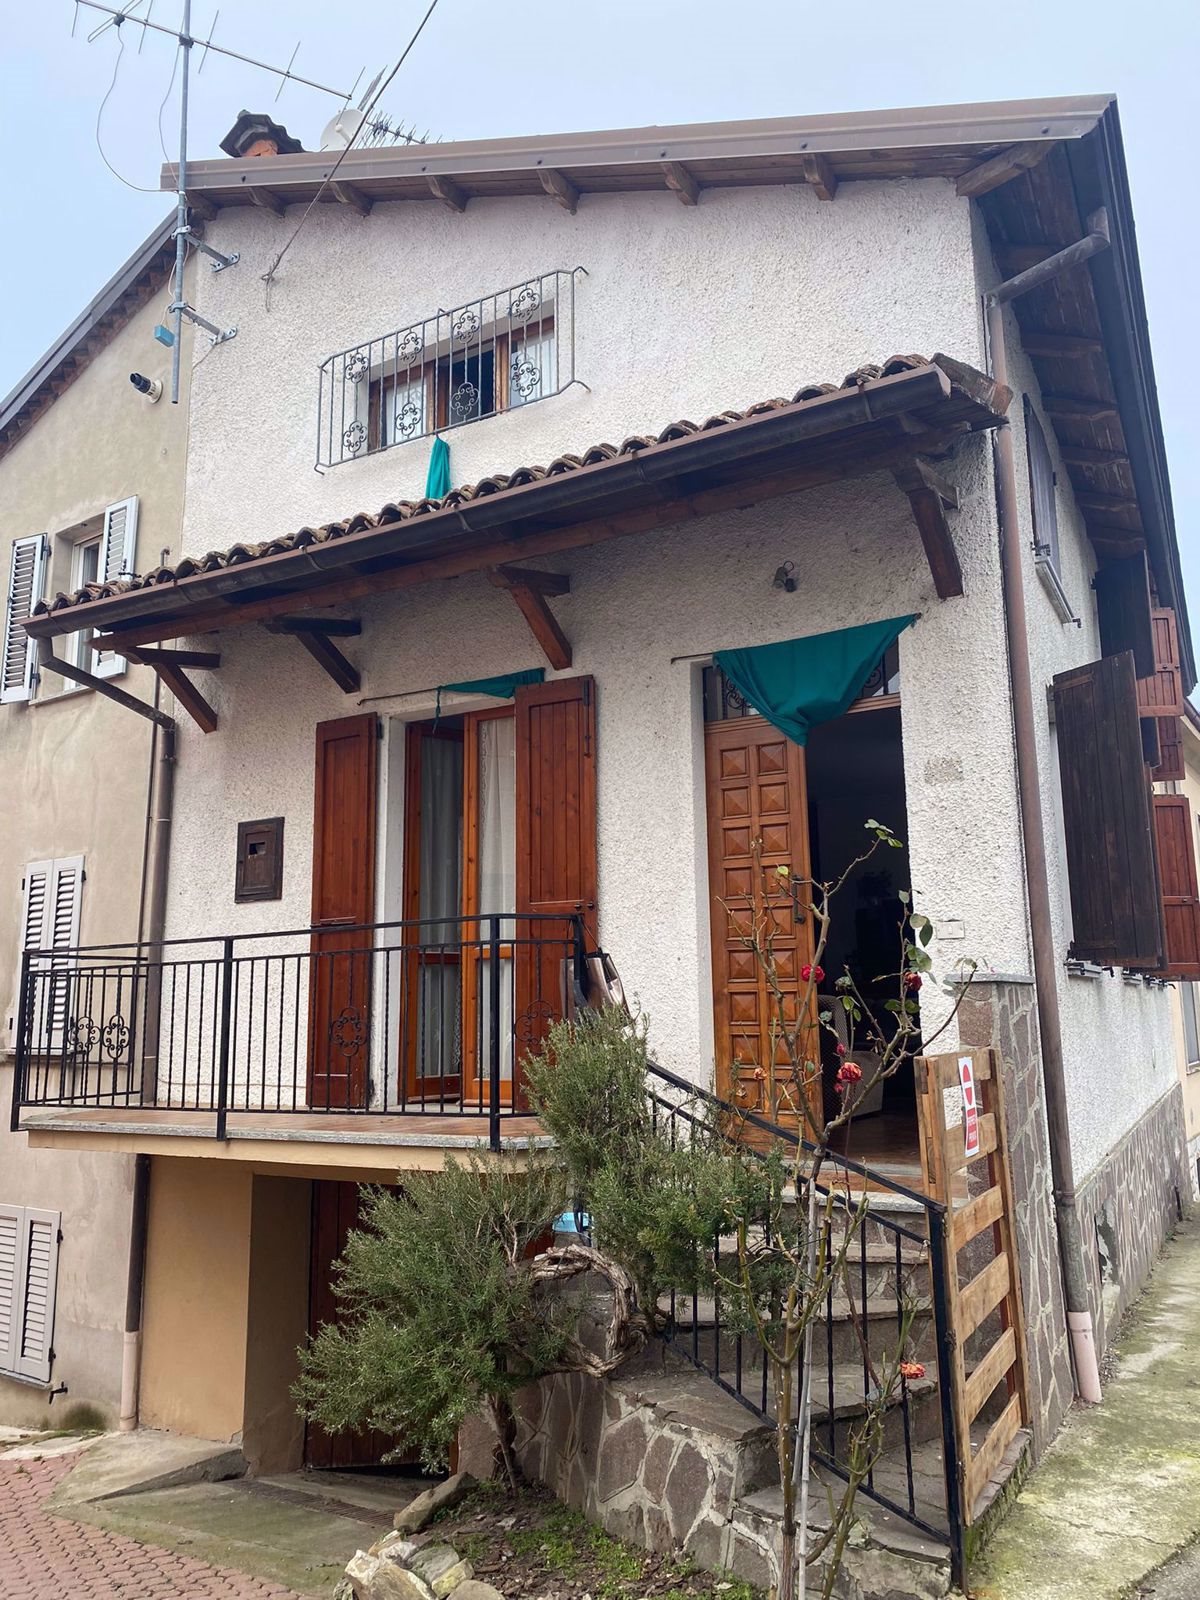 Casa Indipendente in Località Ca' Dallara, Ziano Piacentino (PC)